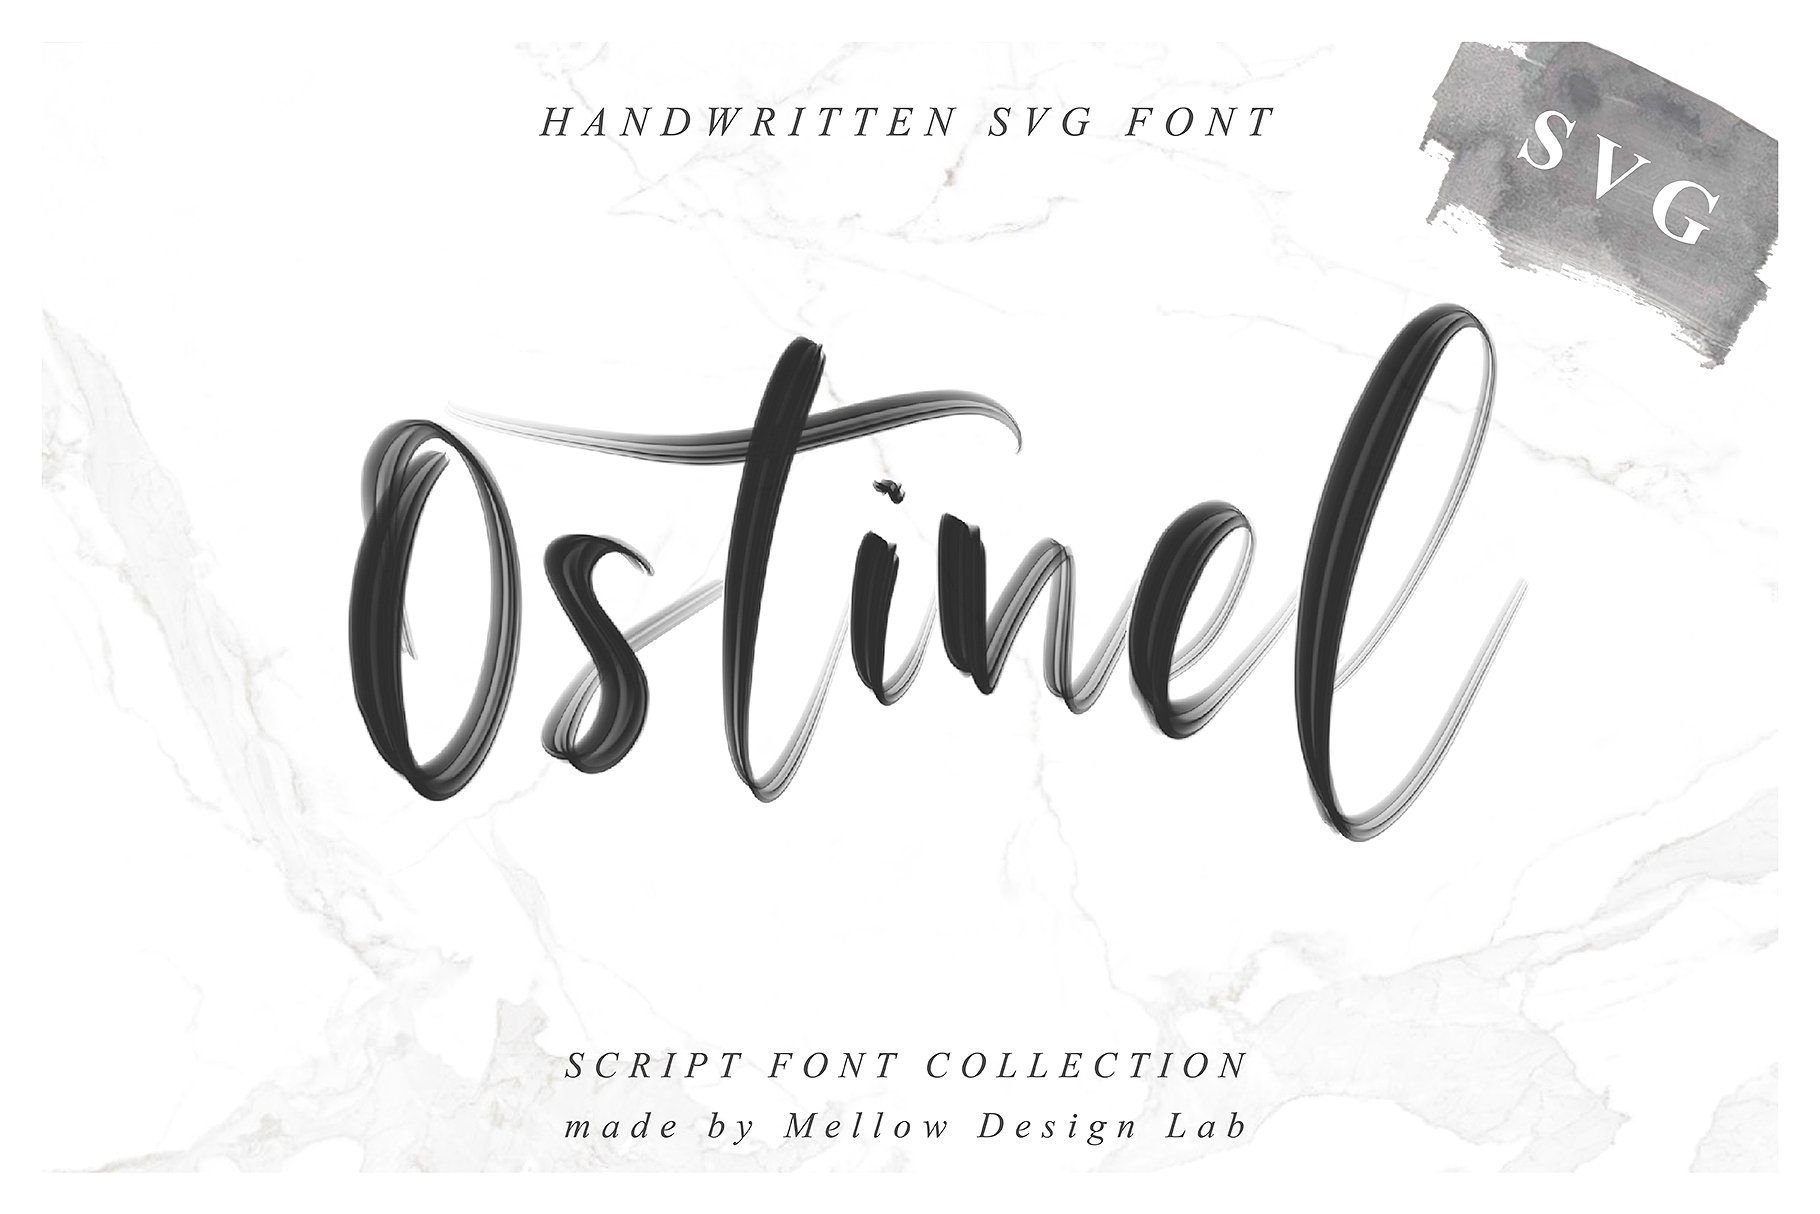 行云流水英文书法SVG画笔字体 Ostinel SVG Script Font插图9